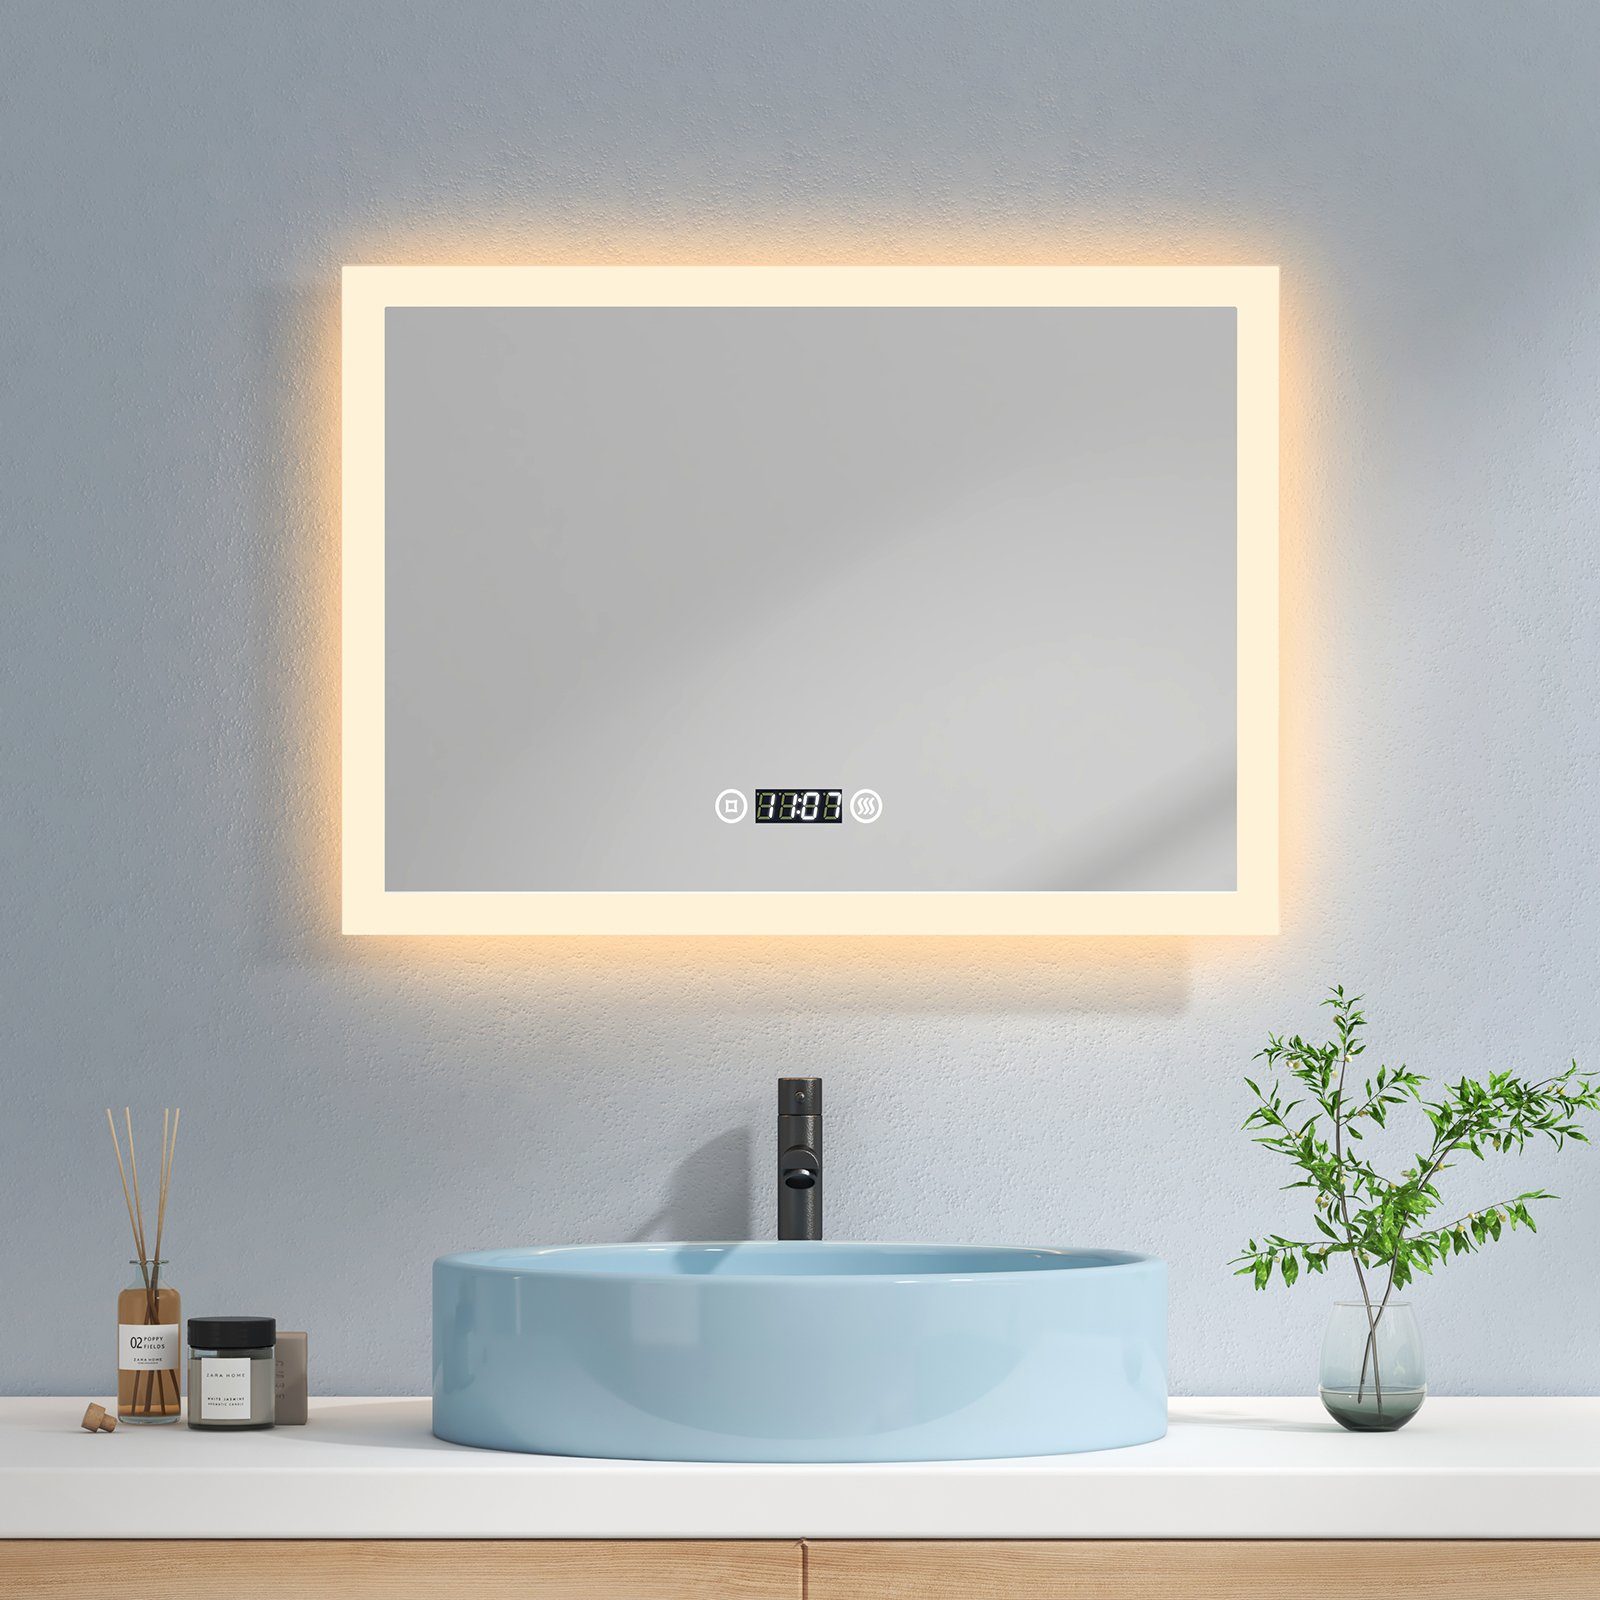 EMKE Badspiegel LED Badspiegel mit Beleuchtung Badezimmerspiegel  Wandspiegel, Warmweißes Licht Beschlagfrei Uhr Touchschalter